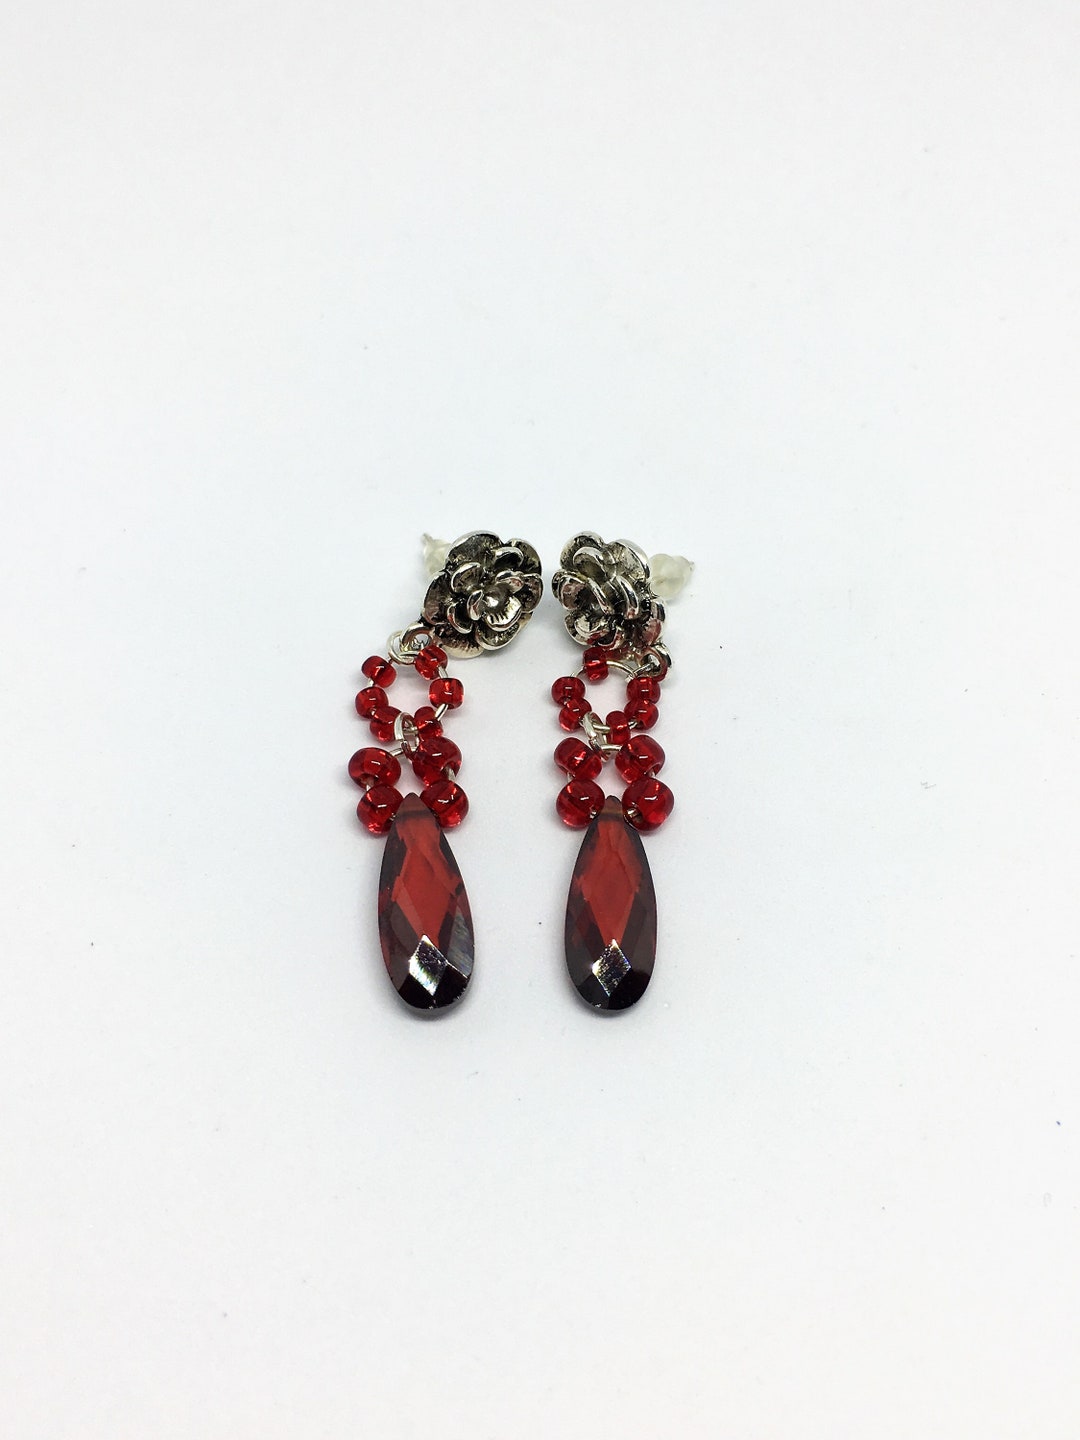 Buy Crimson Earrings, Clay Earrings, Dark Red Statement Earrings,  Girlfriend Gift, Fan Earrings, Half Circle Dangle Earrings, Deep Red  Earrings Online in India - Etsy